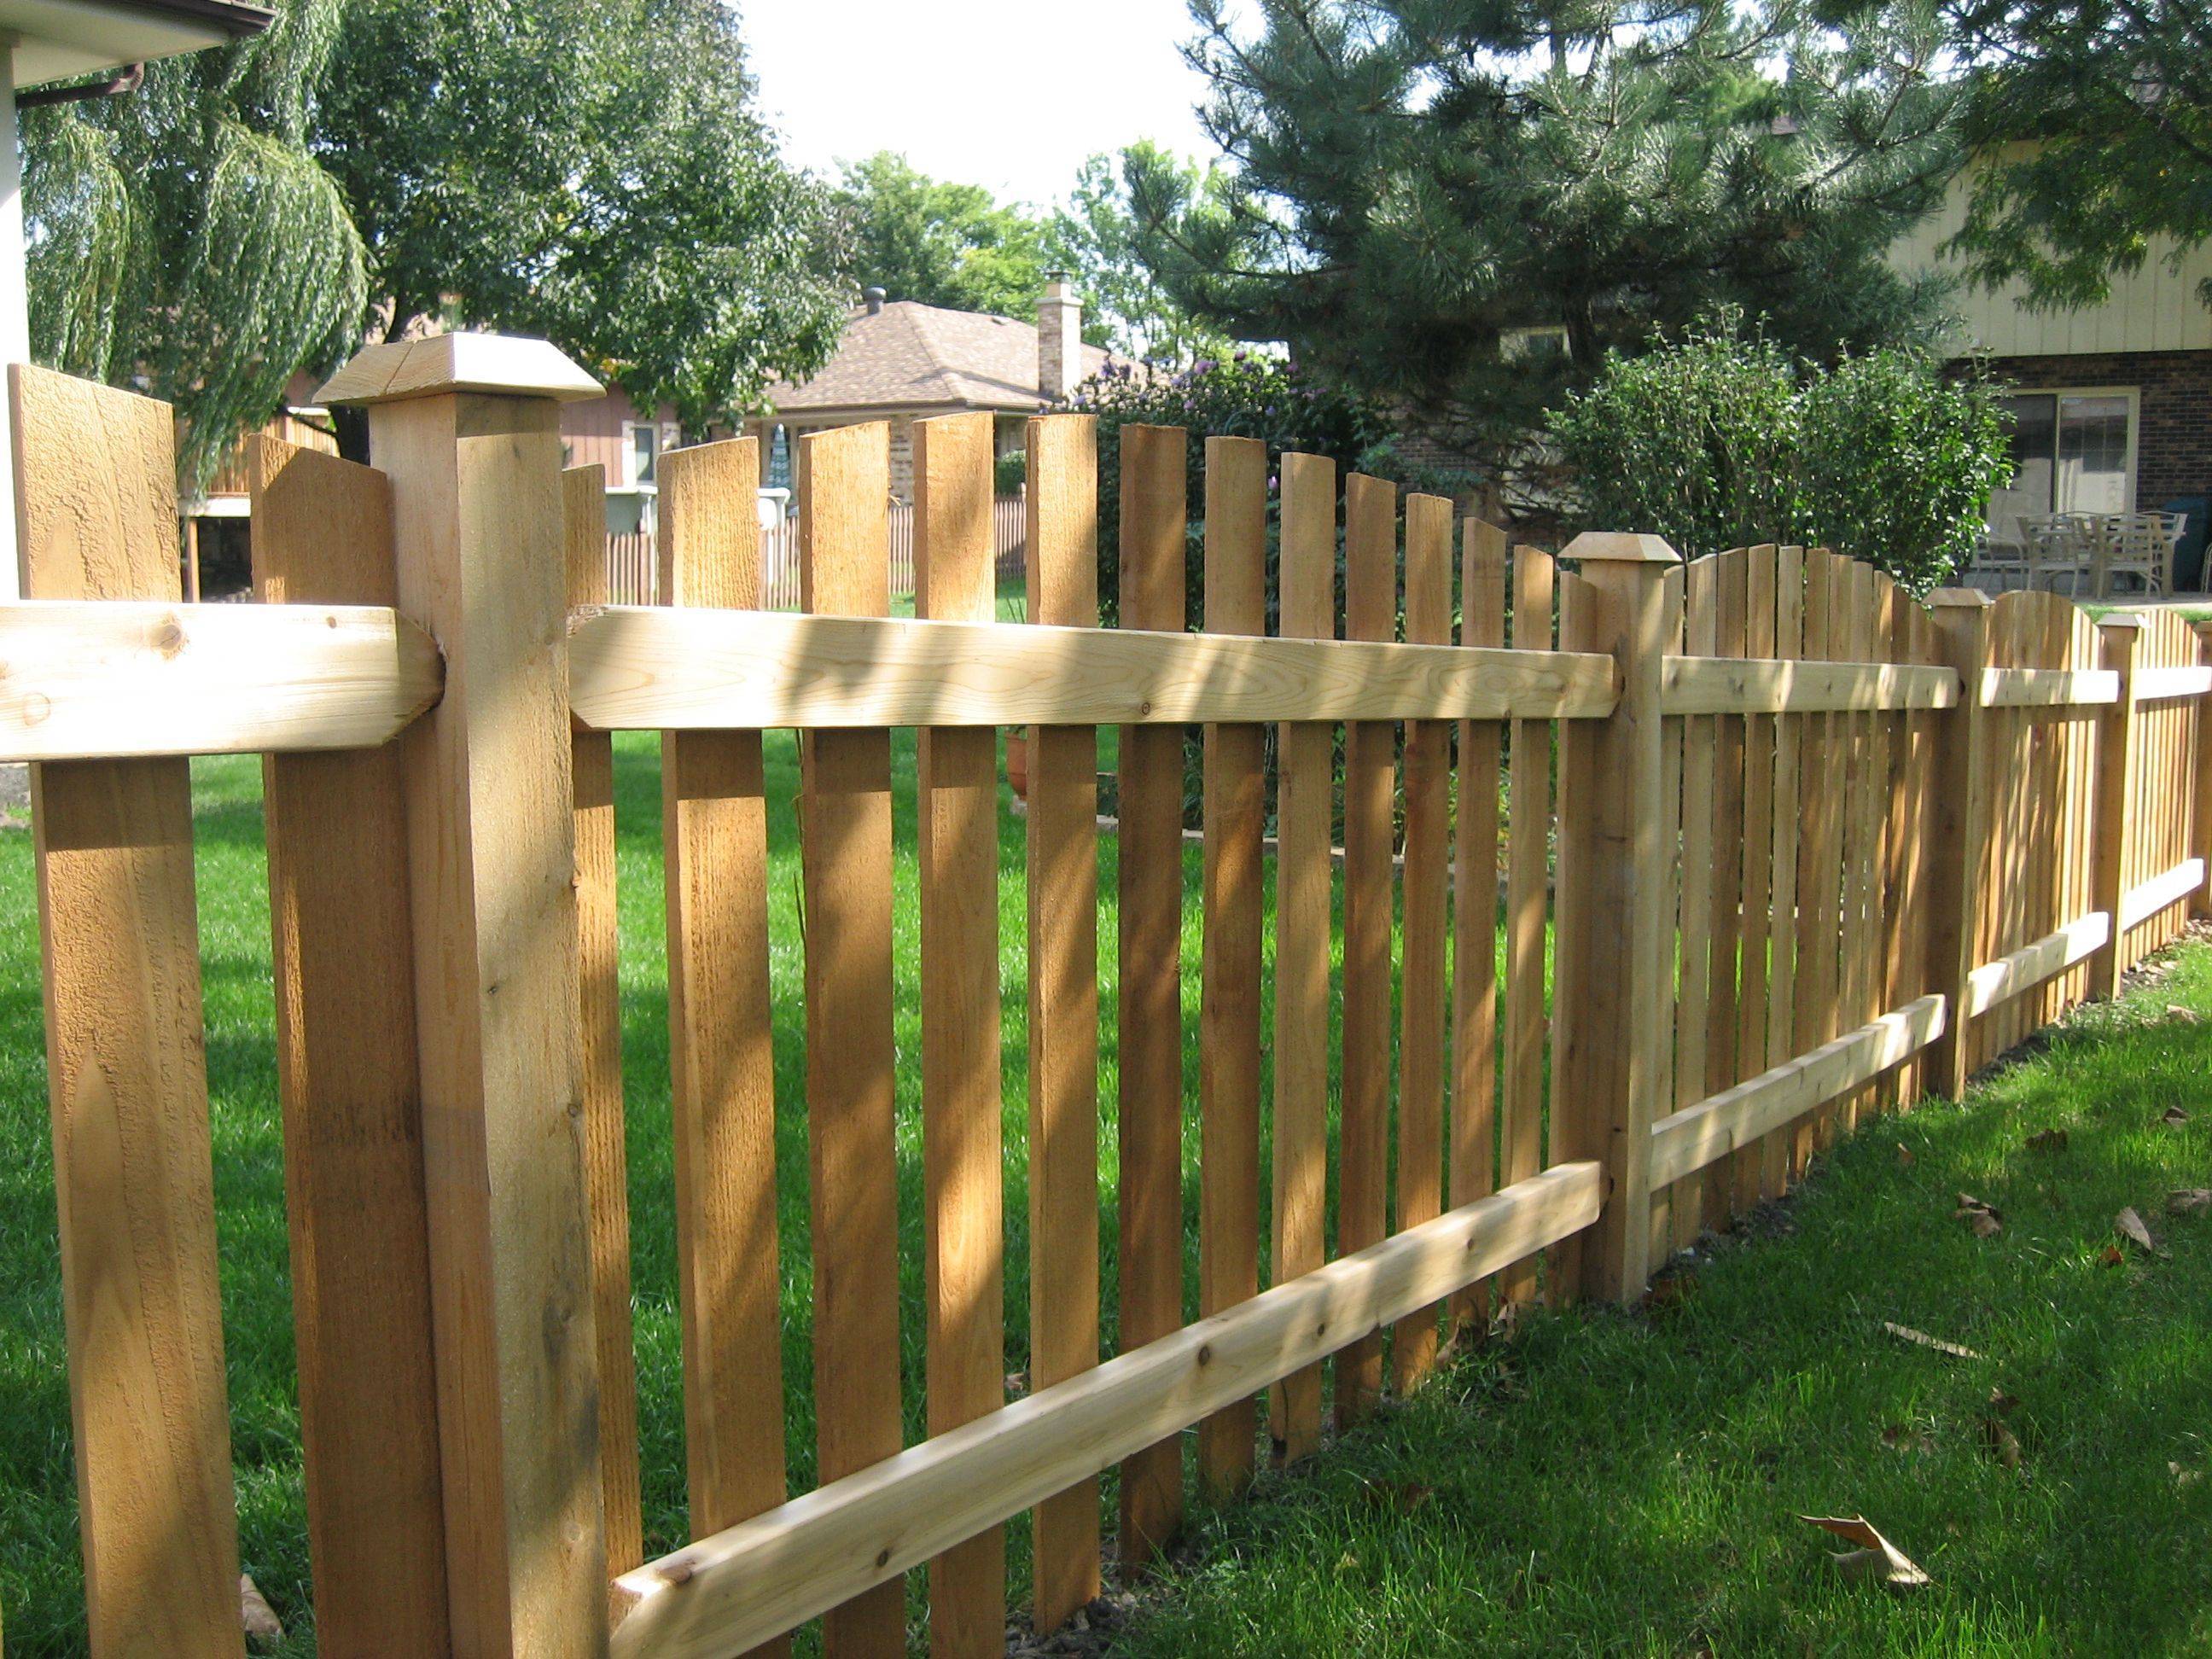 Забор из деревянного штакетника: горизонтальный, вертикальный, резной, березовый, полукруглый, елочкой, плетенный, решетчатый